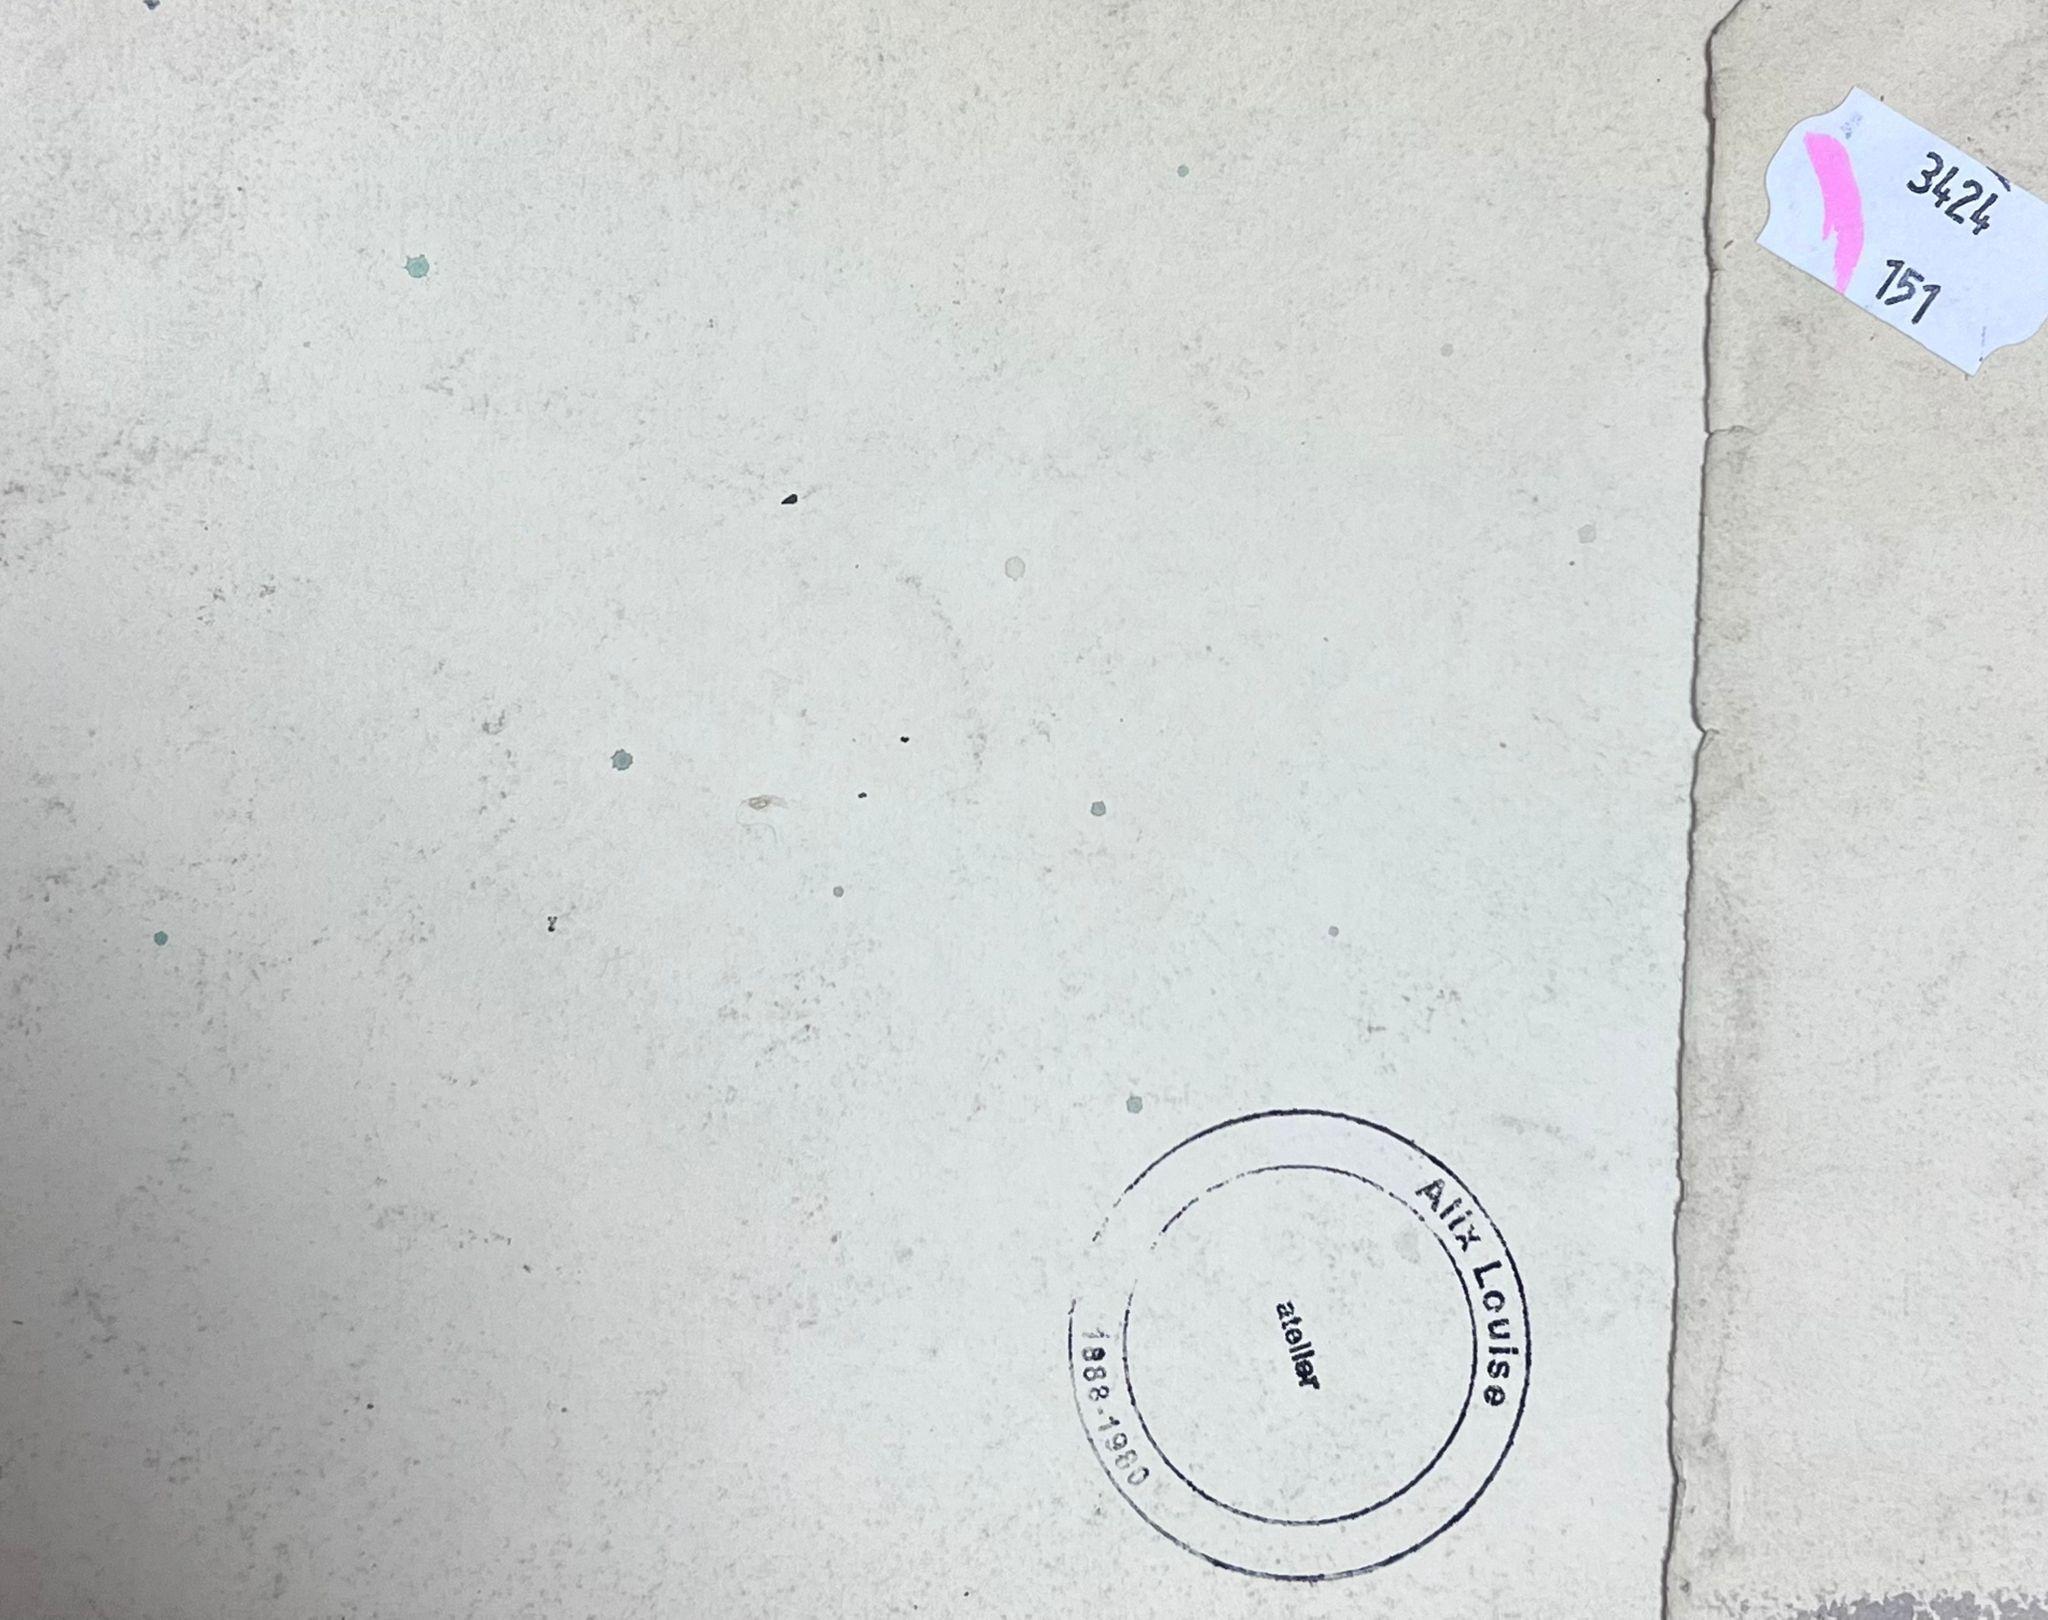 Dächer der Dörfer
von Louise Alix, französische Impressionistin der 1950er Jahre 
Aquarell auf Künstlerpapier, ungerahmt
Gemälde: 7 x 8,75 Zoll
Provenienz: aus einer großen Privatsammlung dieses Künstlers in Nordfrankreich
Zustand: originaler, guter